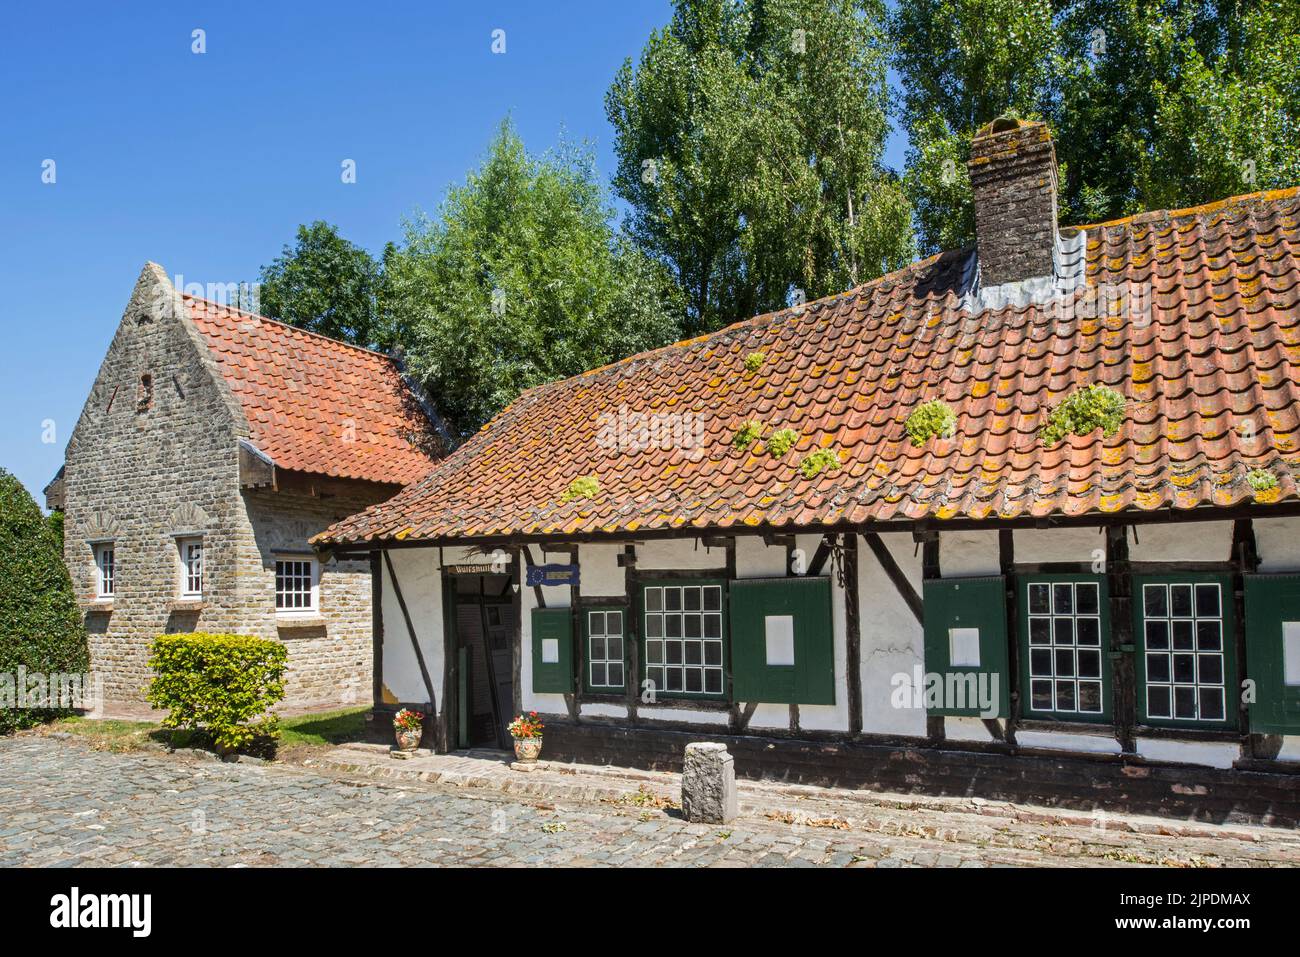 Maison rurale à colombages / en bois au musée en plein air Bachten de Kupe, Izenberge, Flandre Occidentale, Belgique Banque D'Images